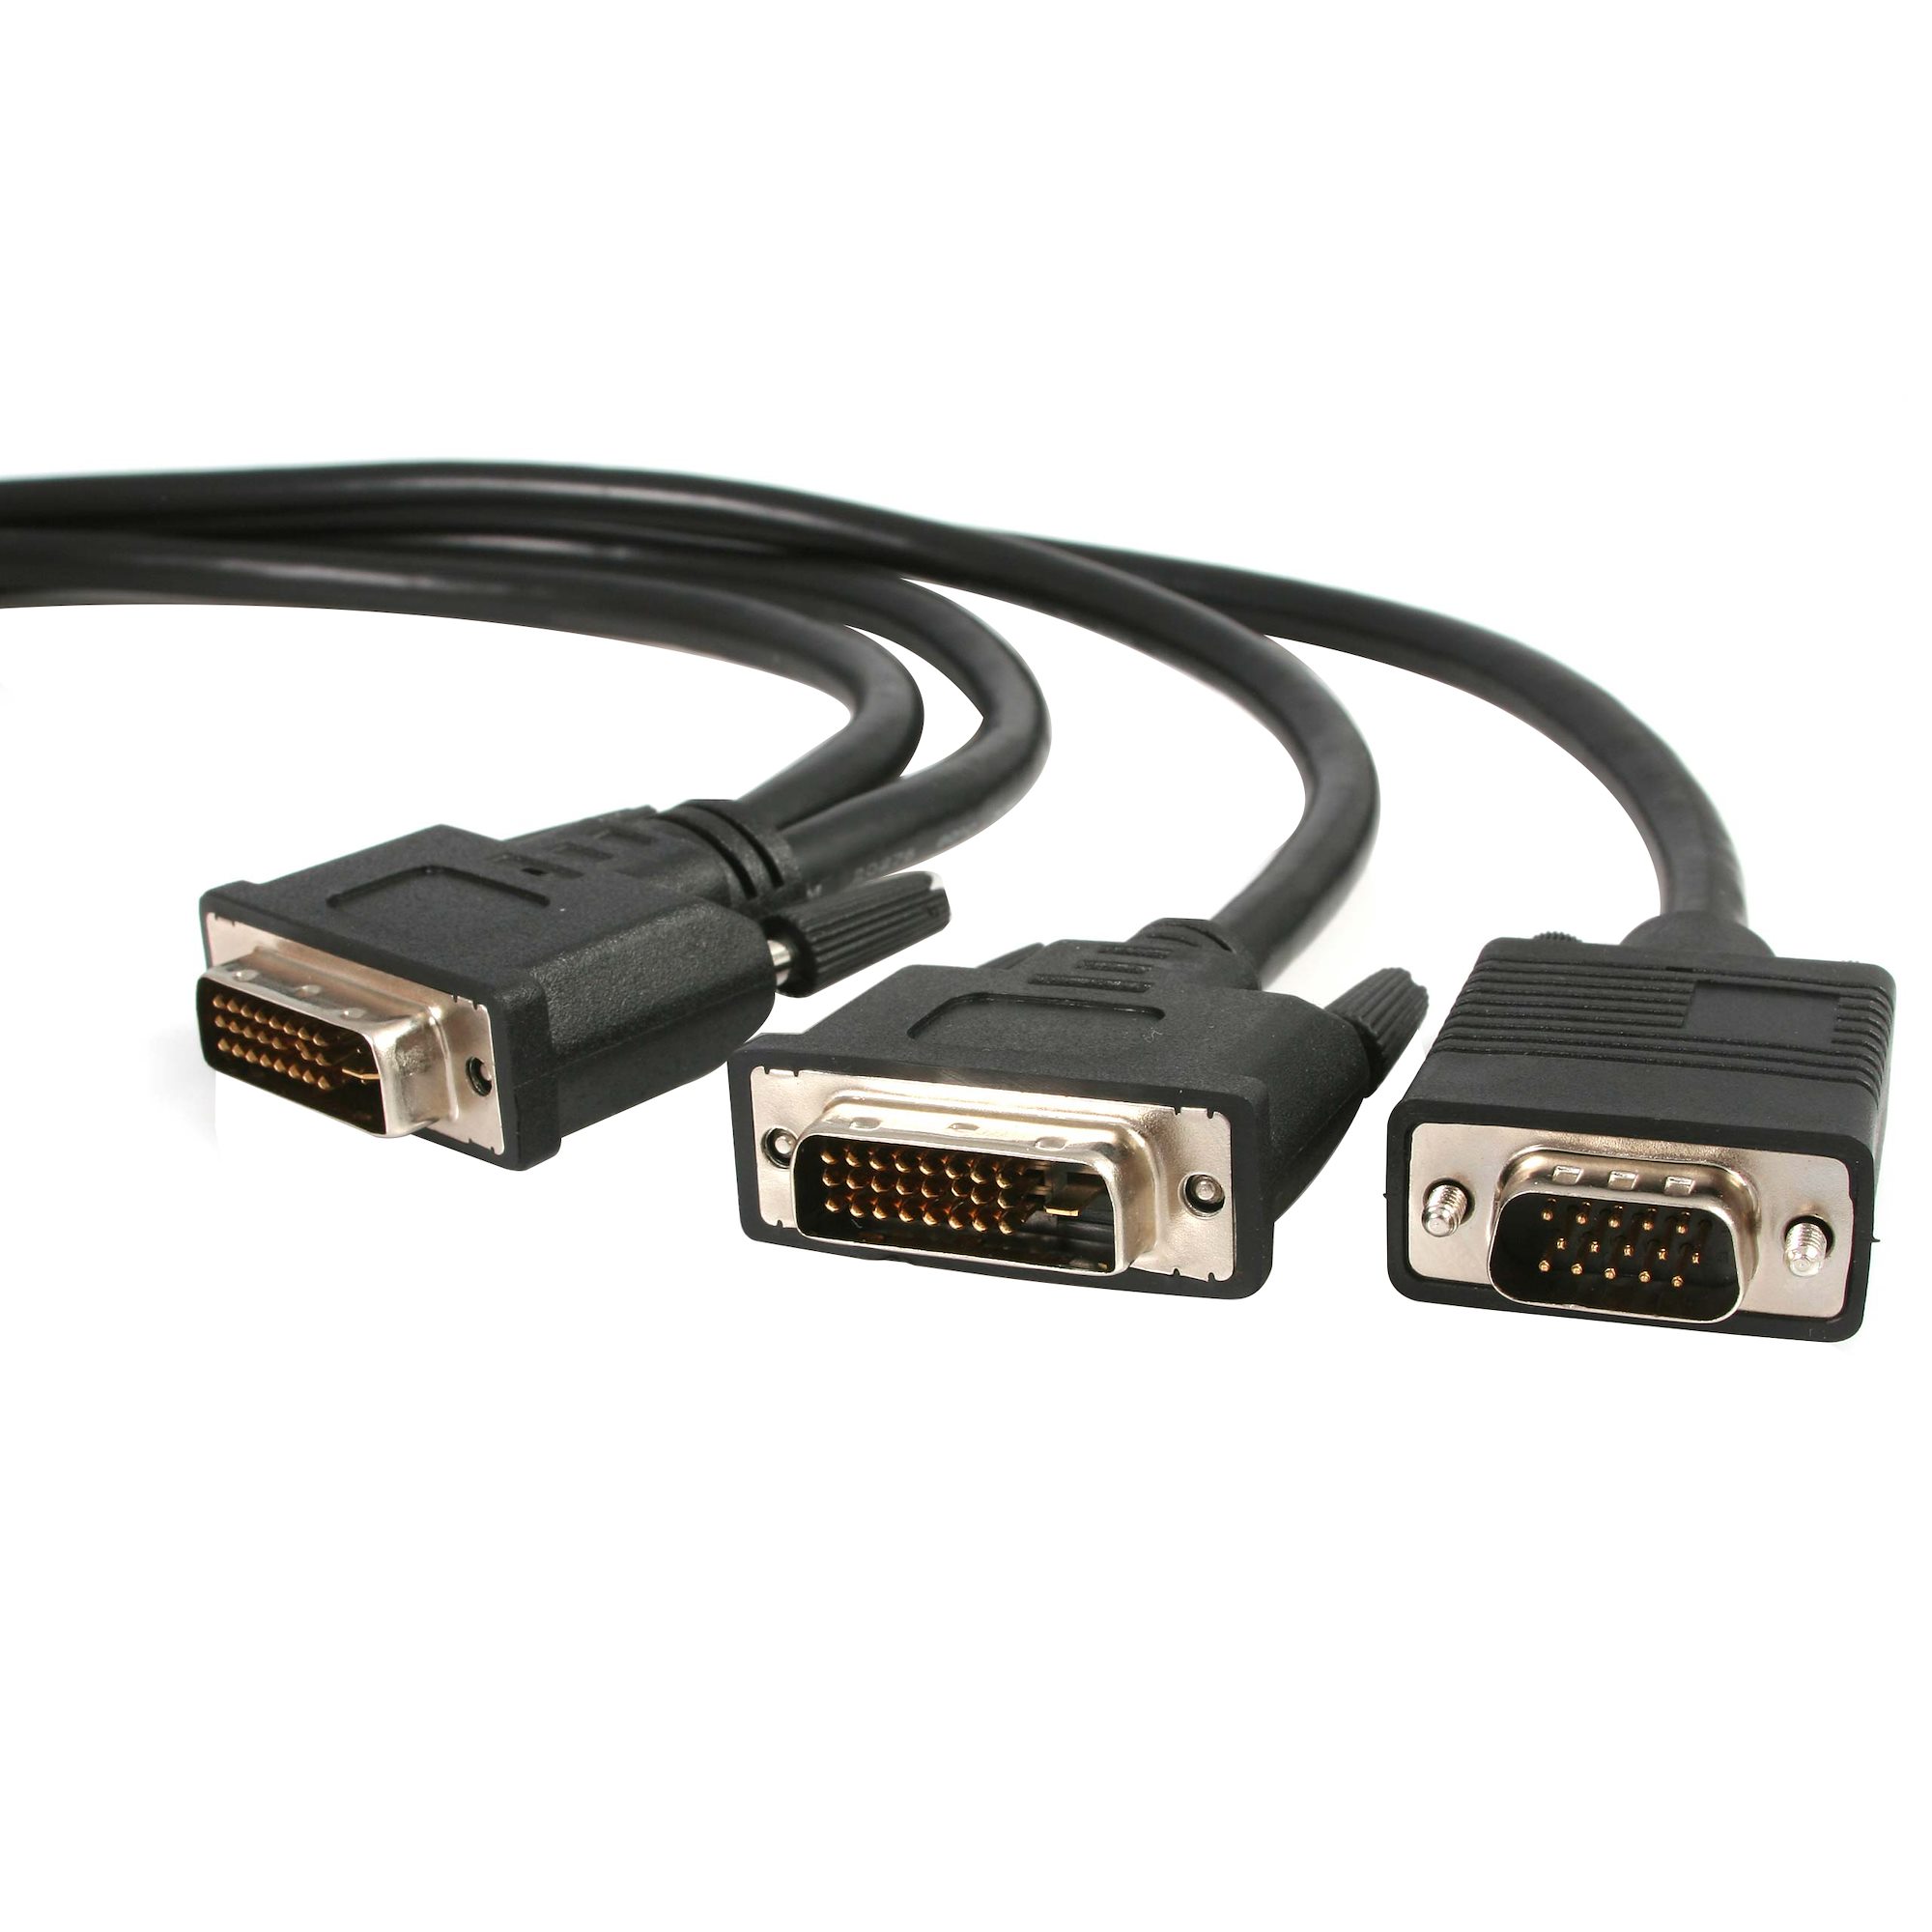 1,8m DVI-I to DVI-D & VGA Splitter Cable - DVI Cables | Cables